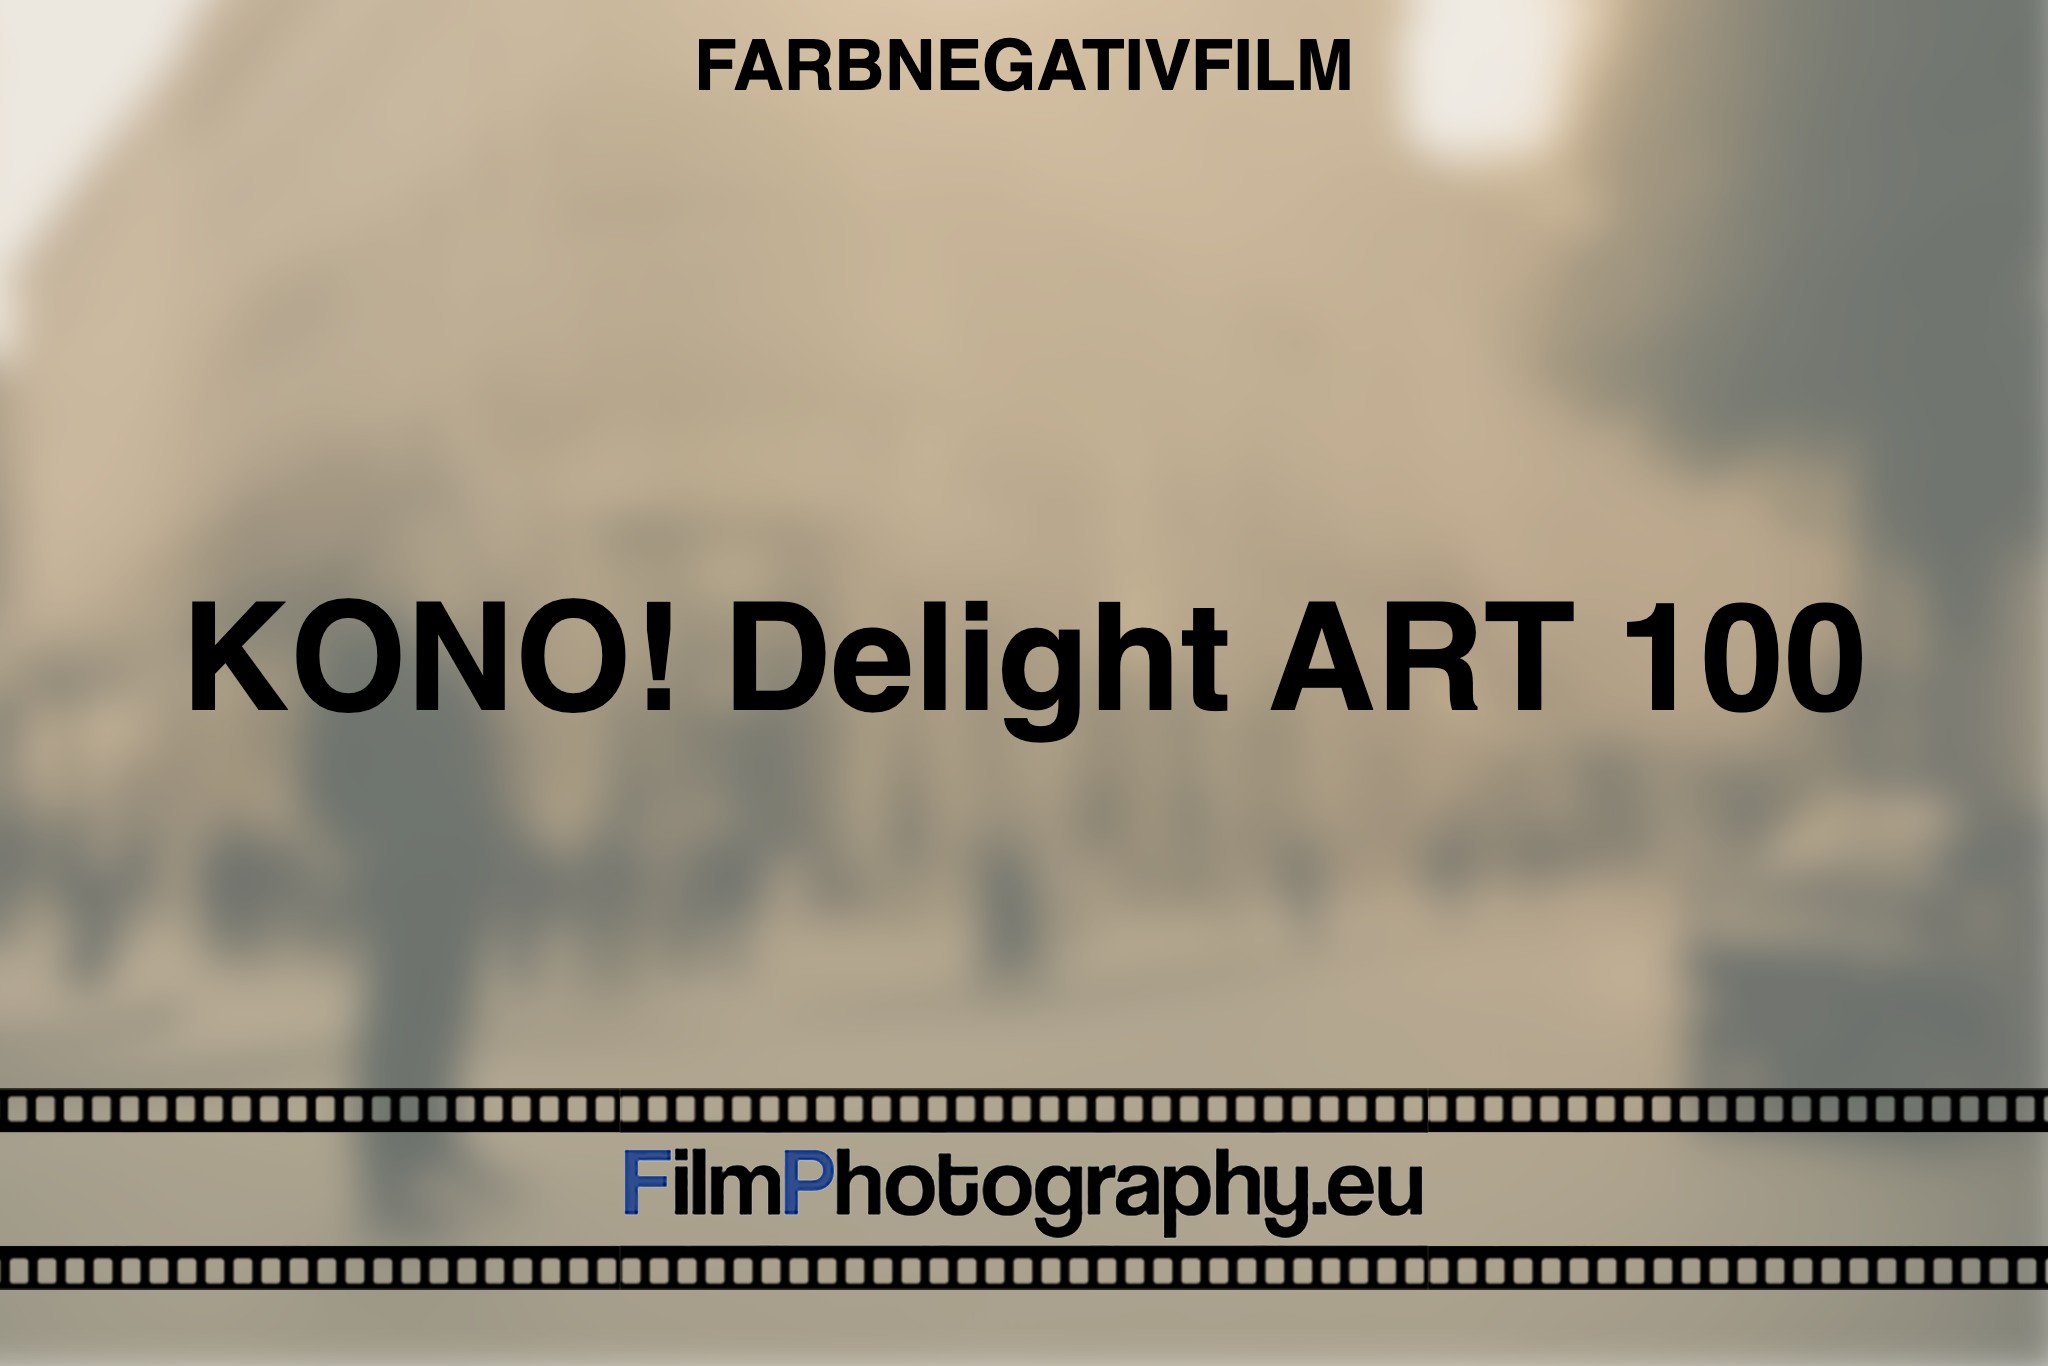 kono-delight-art-100-farbnegativfilm-bnv